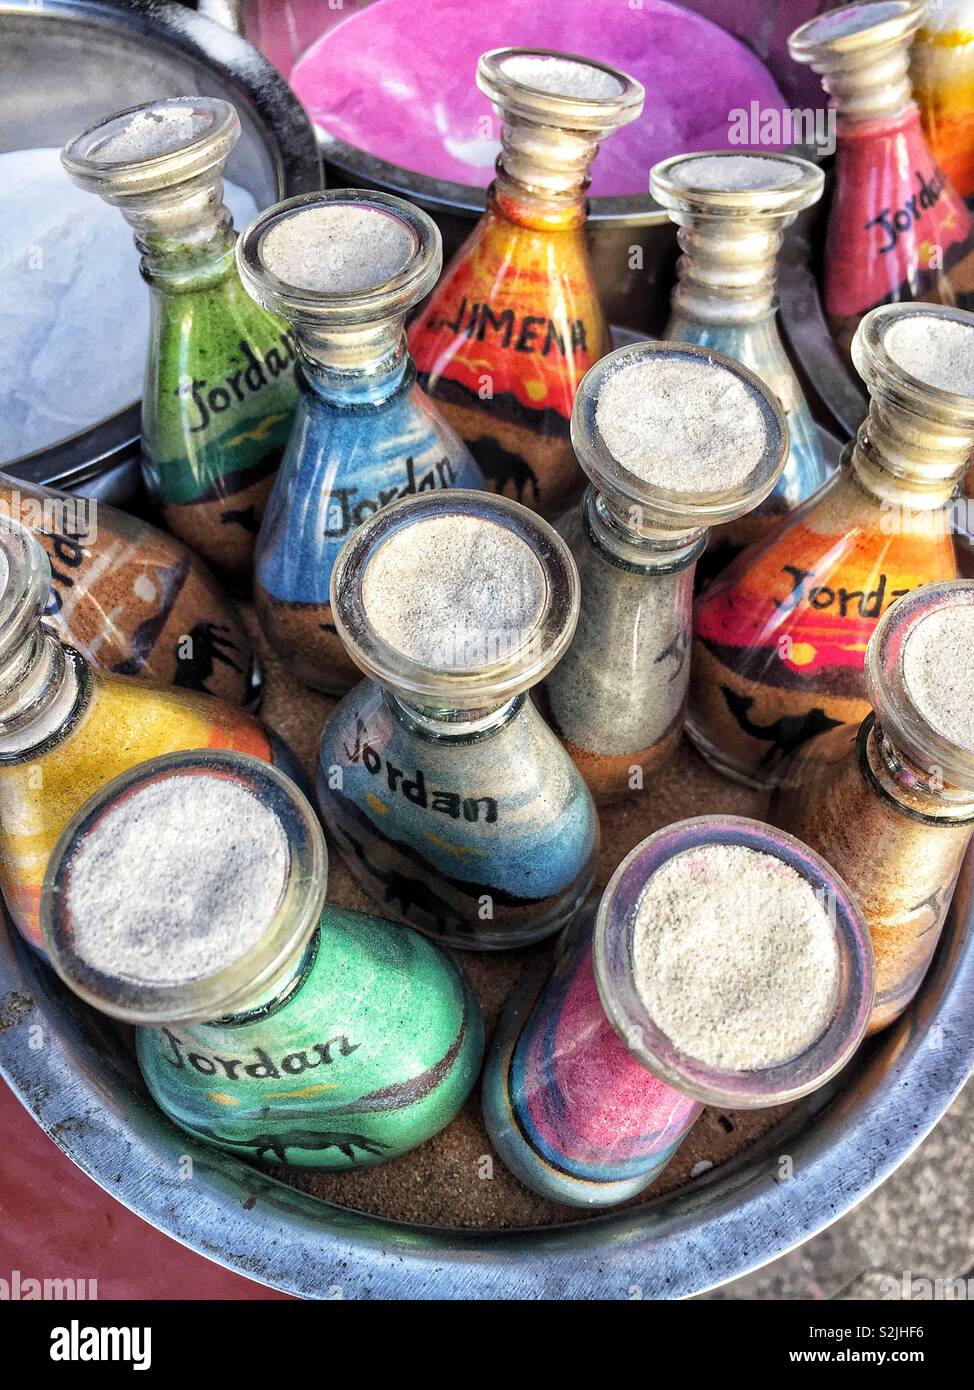 Quattro Piccole Bottiglie Di Vetro Con La Sabbia Colorata Fotografia Stock  - Immagine di sabbia, chiuso: 108992004